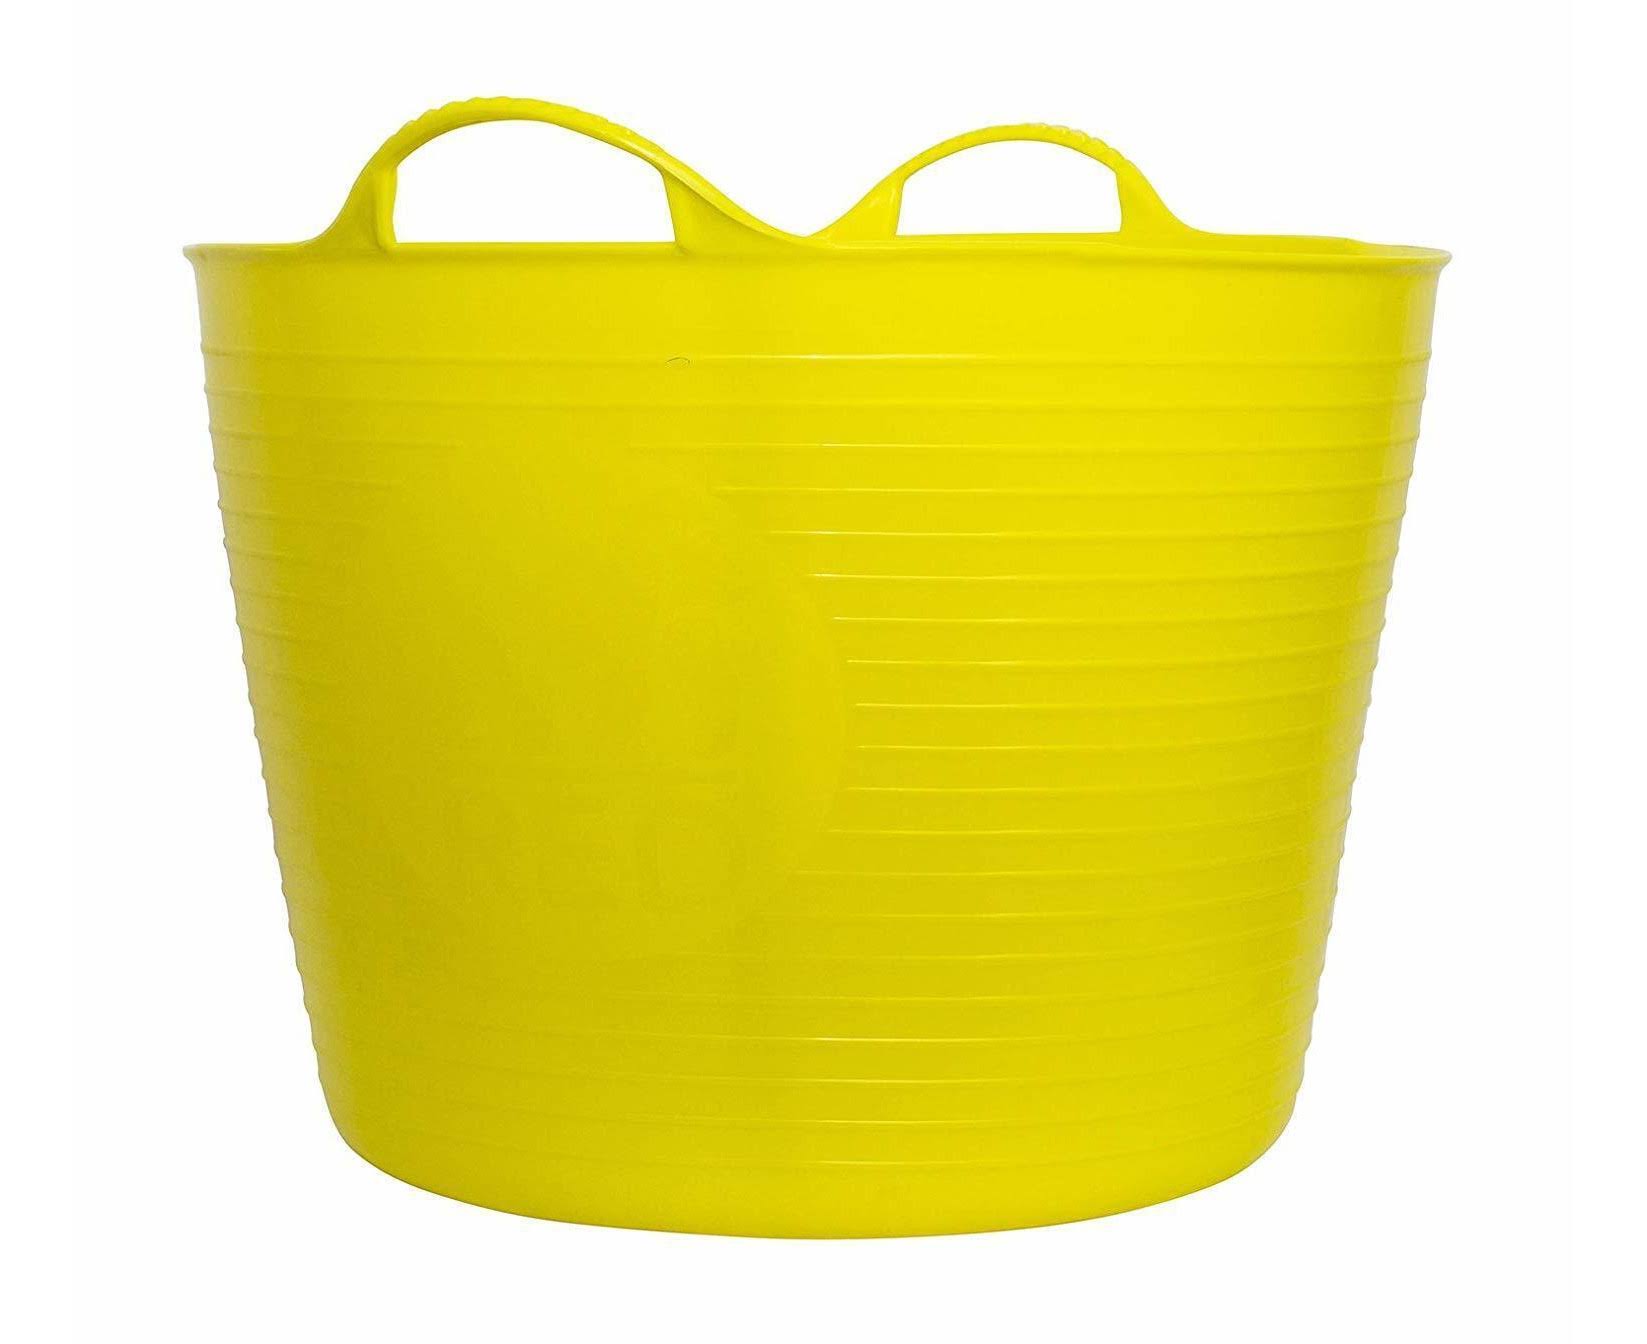 Gorilla Yellow Tub - Medium, 26L